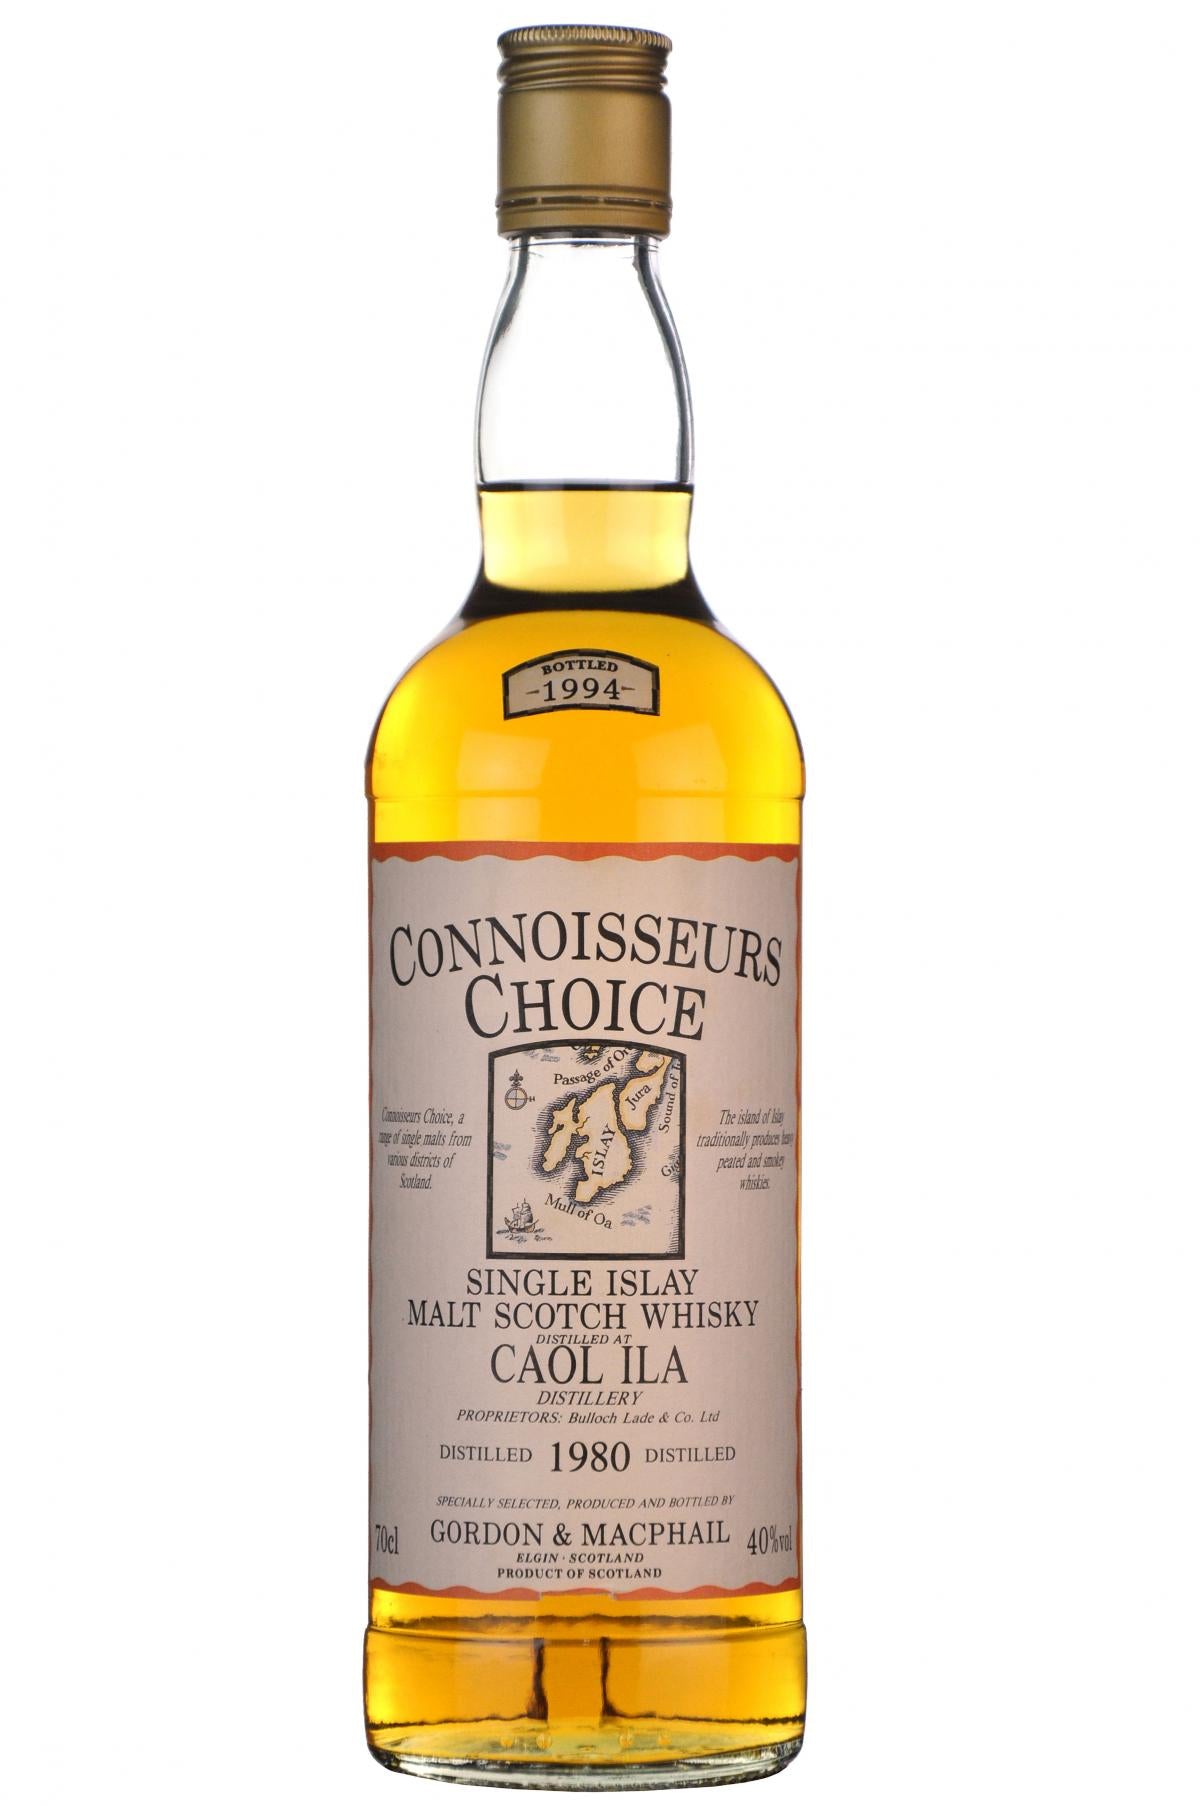 caol ila distilled 1980 bottled 1994 gordon and macphail connoisseurs choice islay single malt scotch whisky whiskey